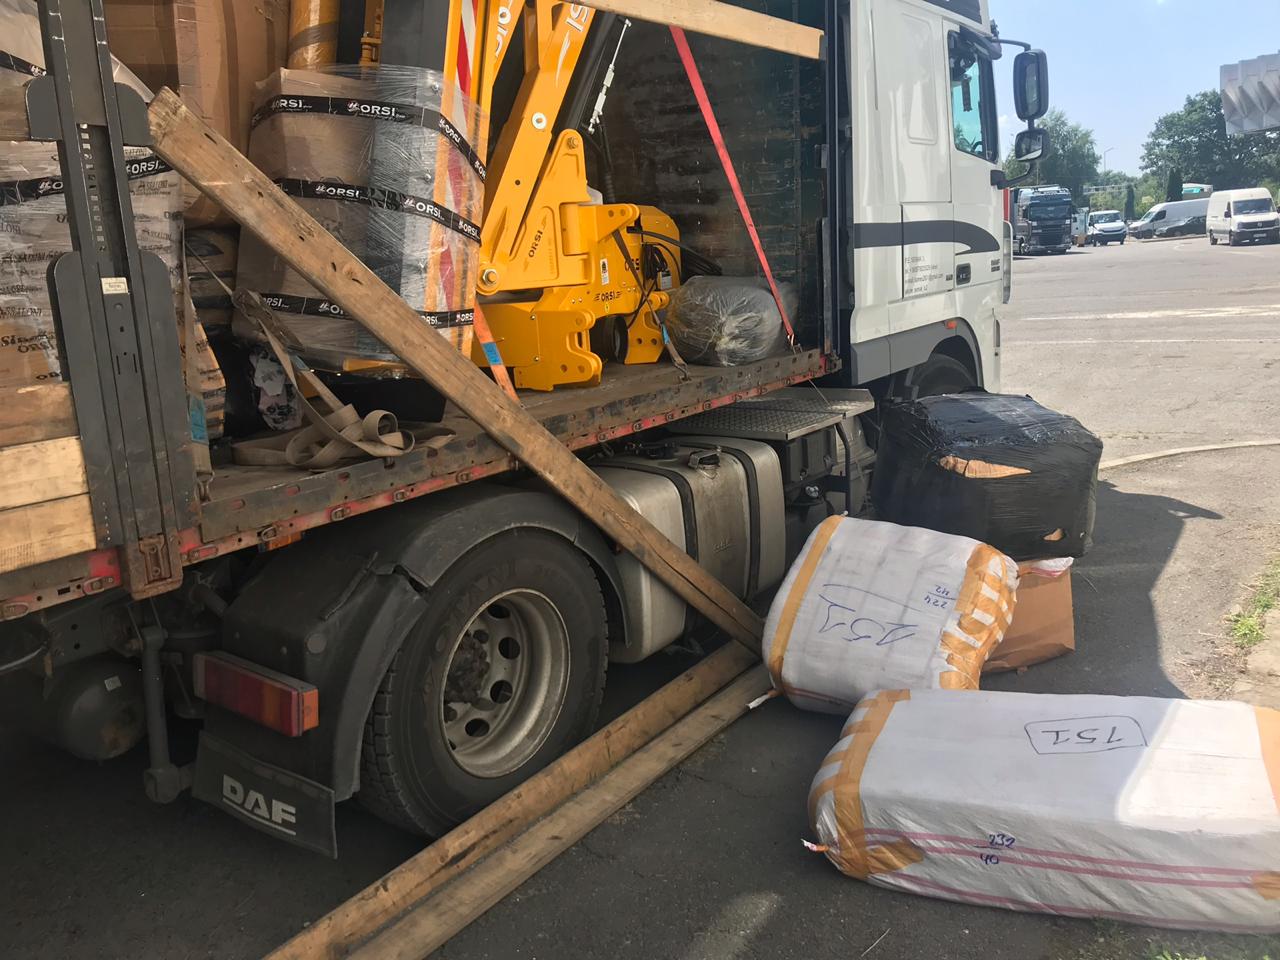 Сьогодні, 16 липня 2019 року, на митний пост «Тиса» Закарпатської митниці ДФС прибув транспортний засіб з вантажем «косарки тракторні». 